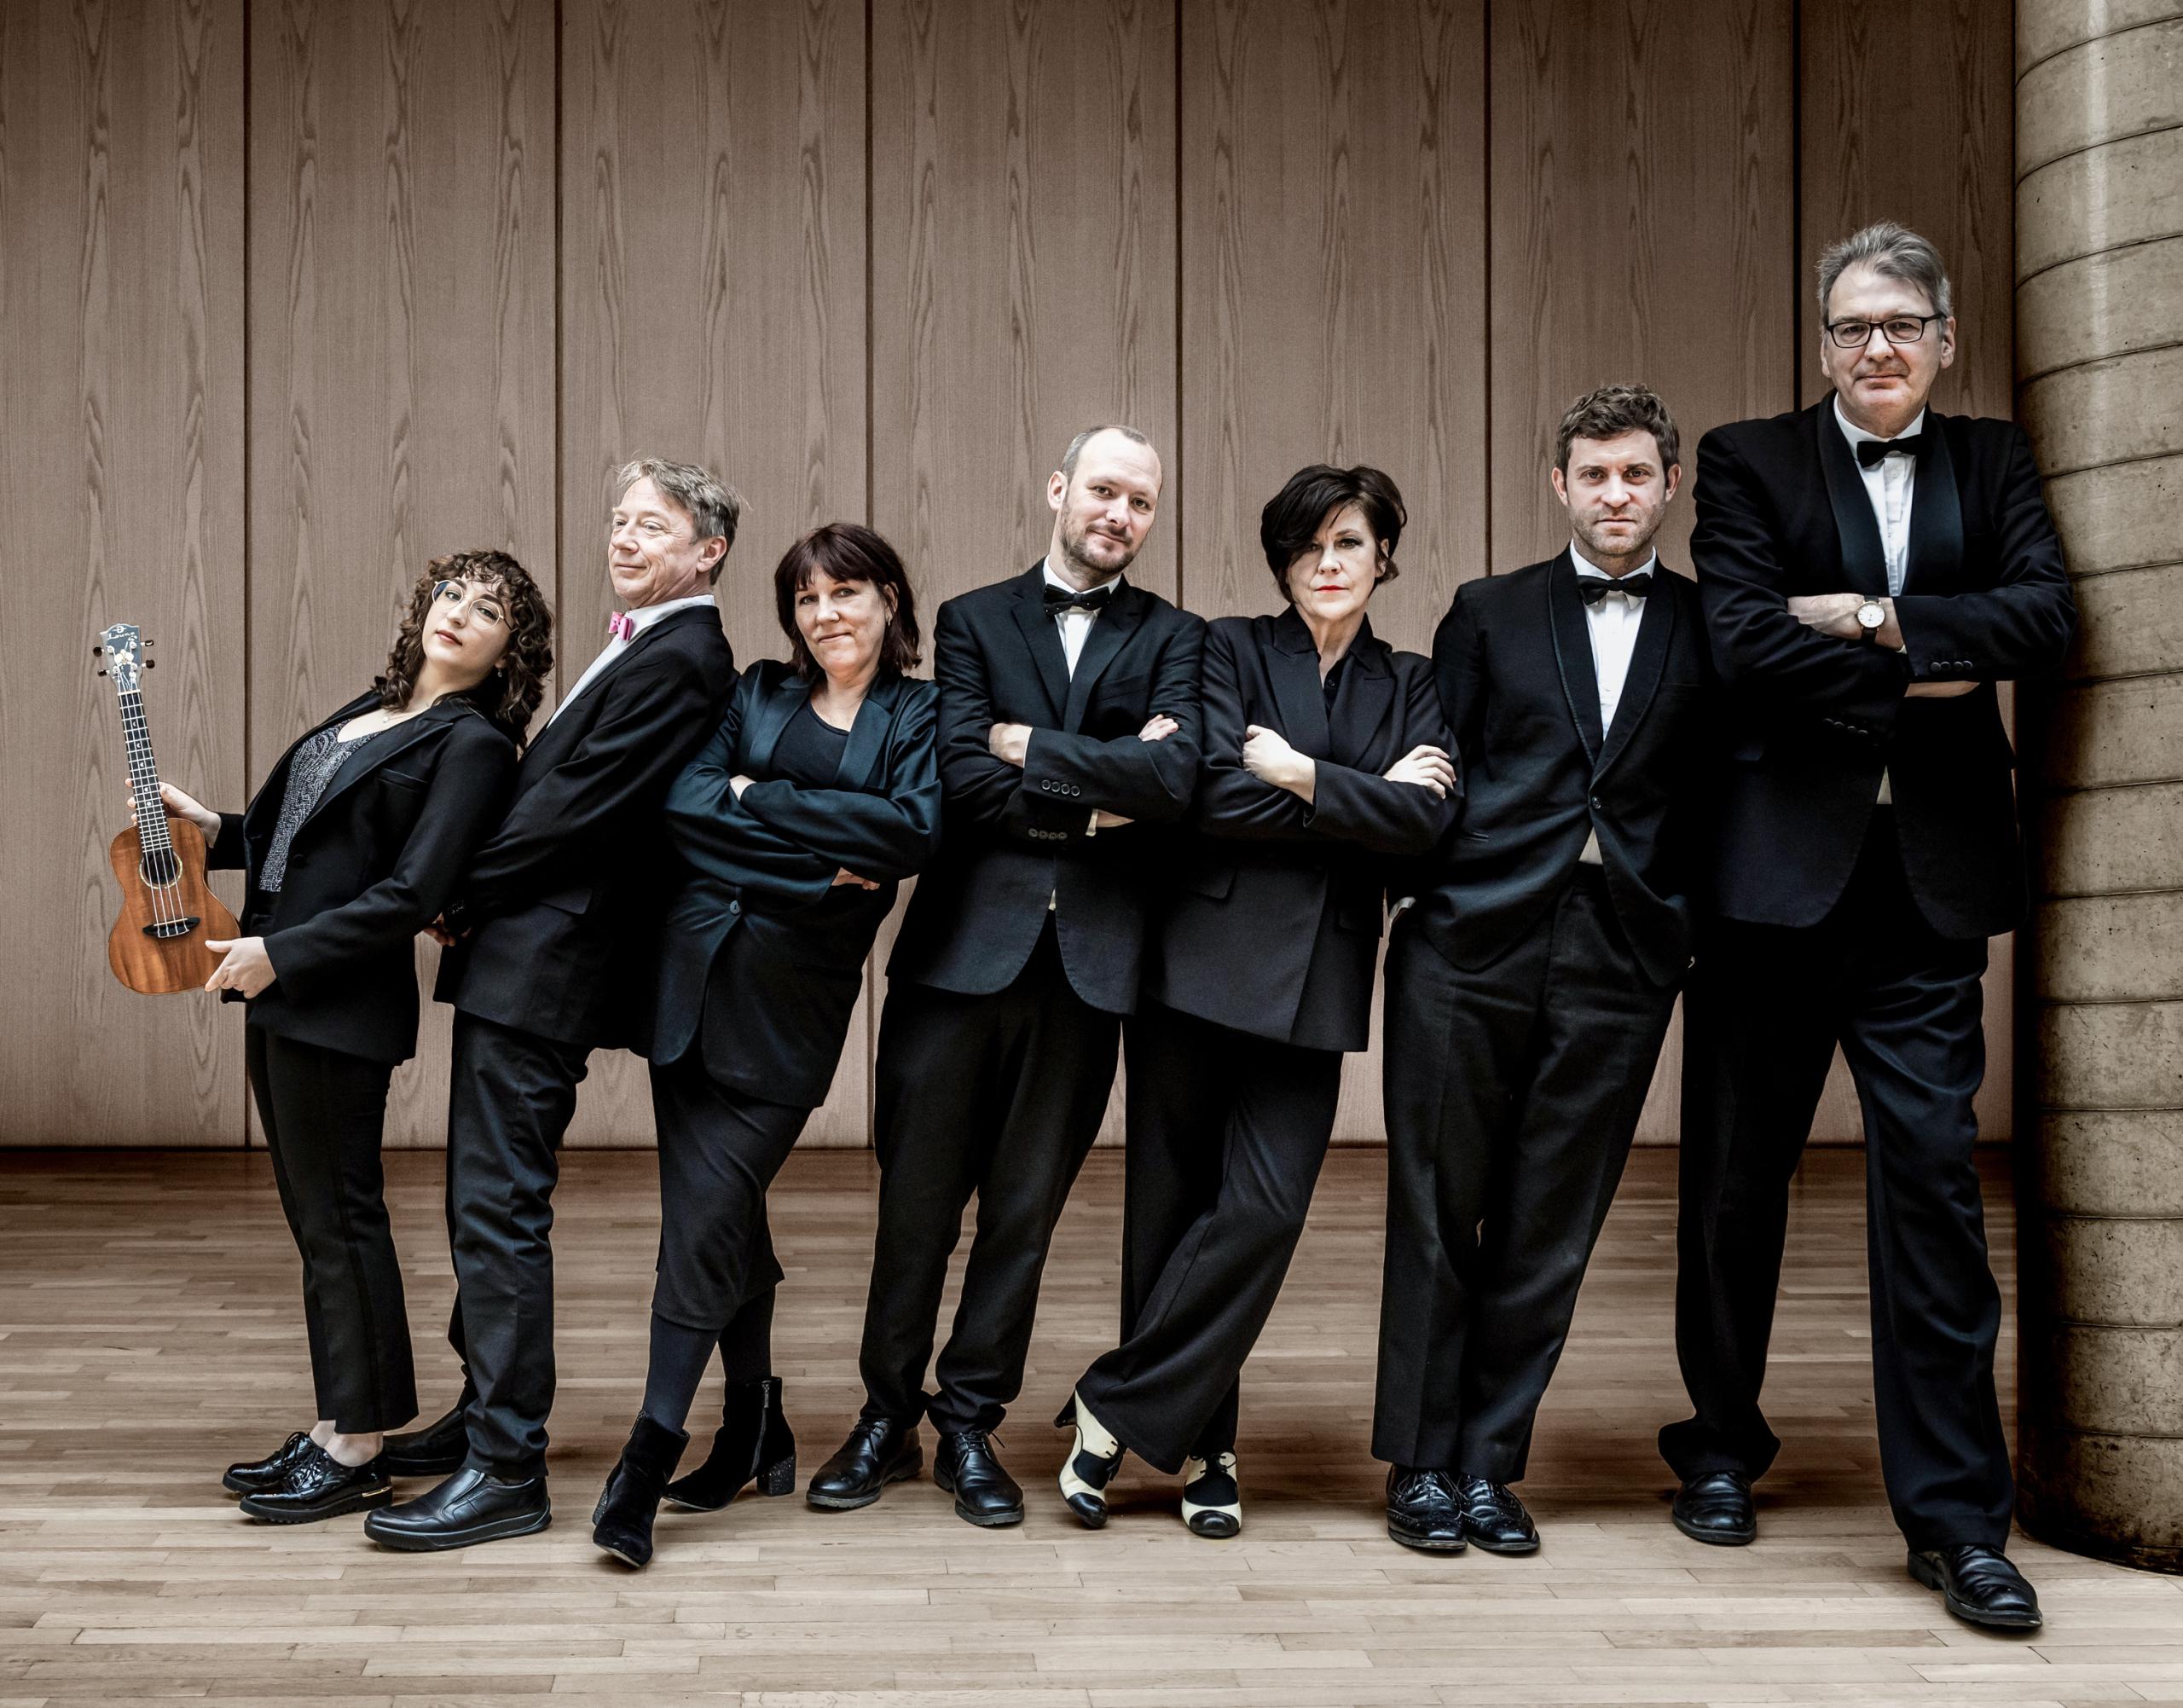 Die mitglieder des Ukulele Orchestra of Great Britain stehen in schwarzen Anzügen vor einer Holzwand und schauen in die Kamera.